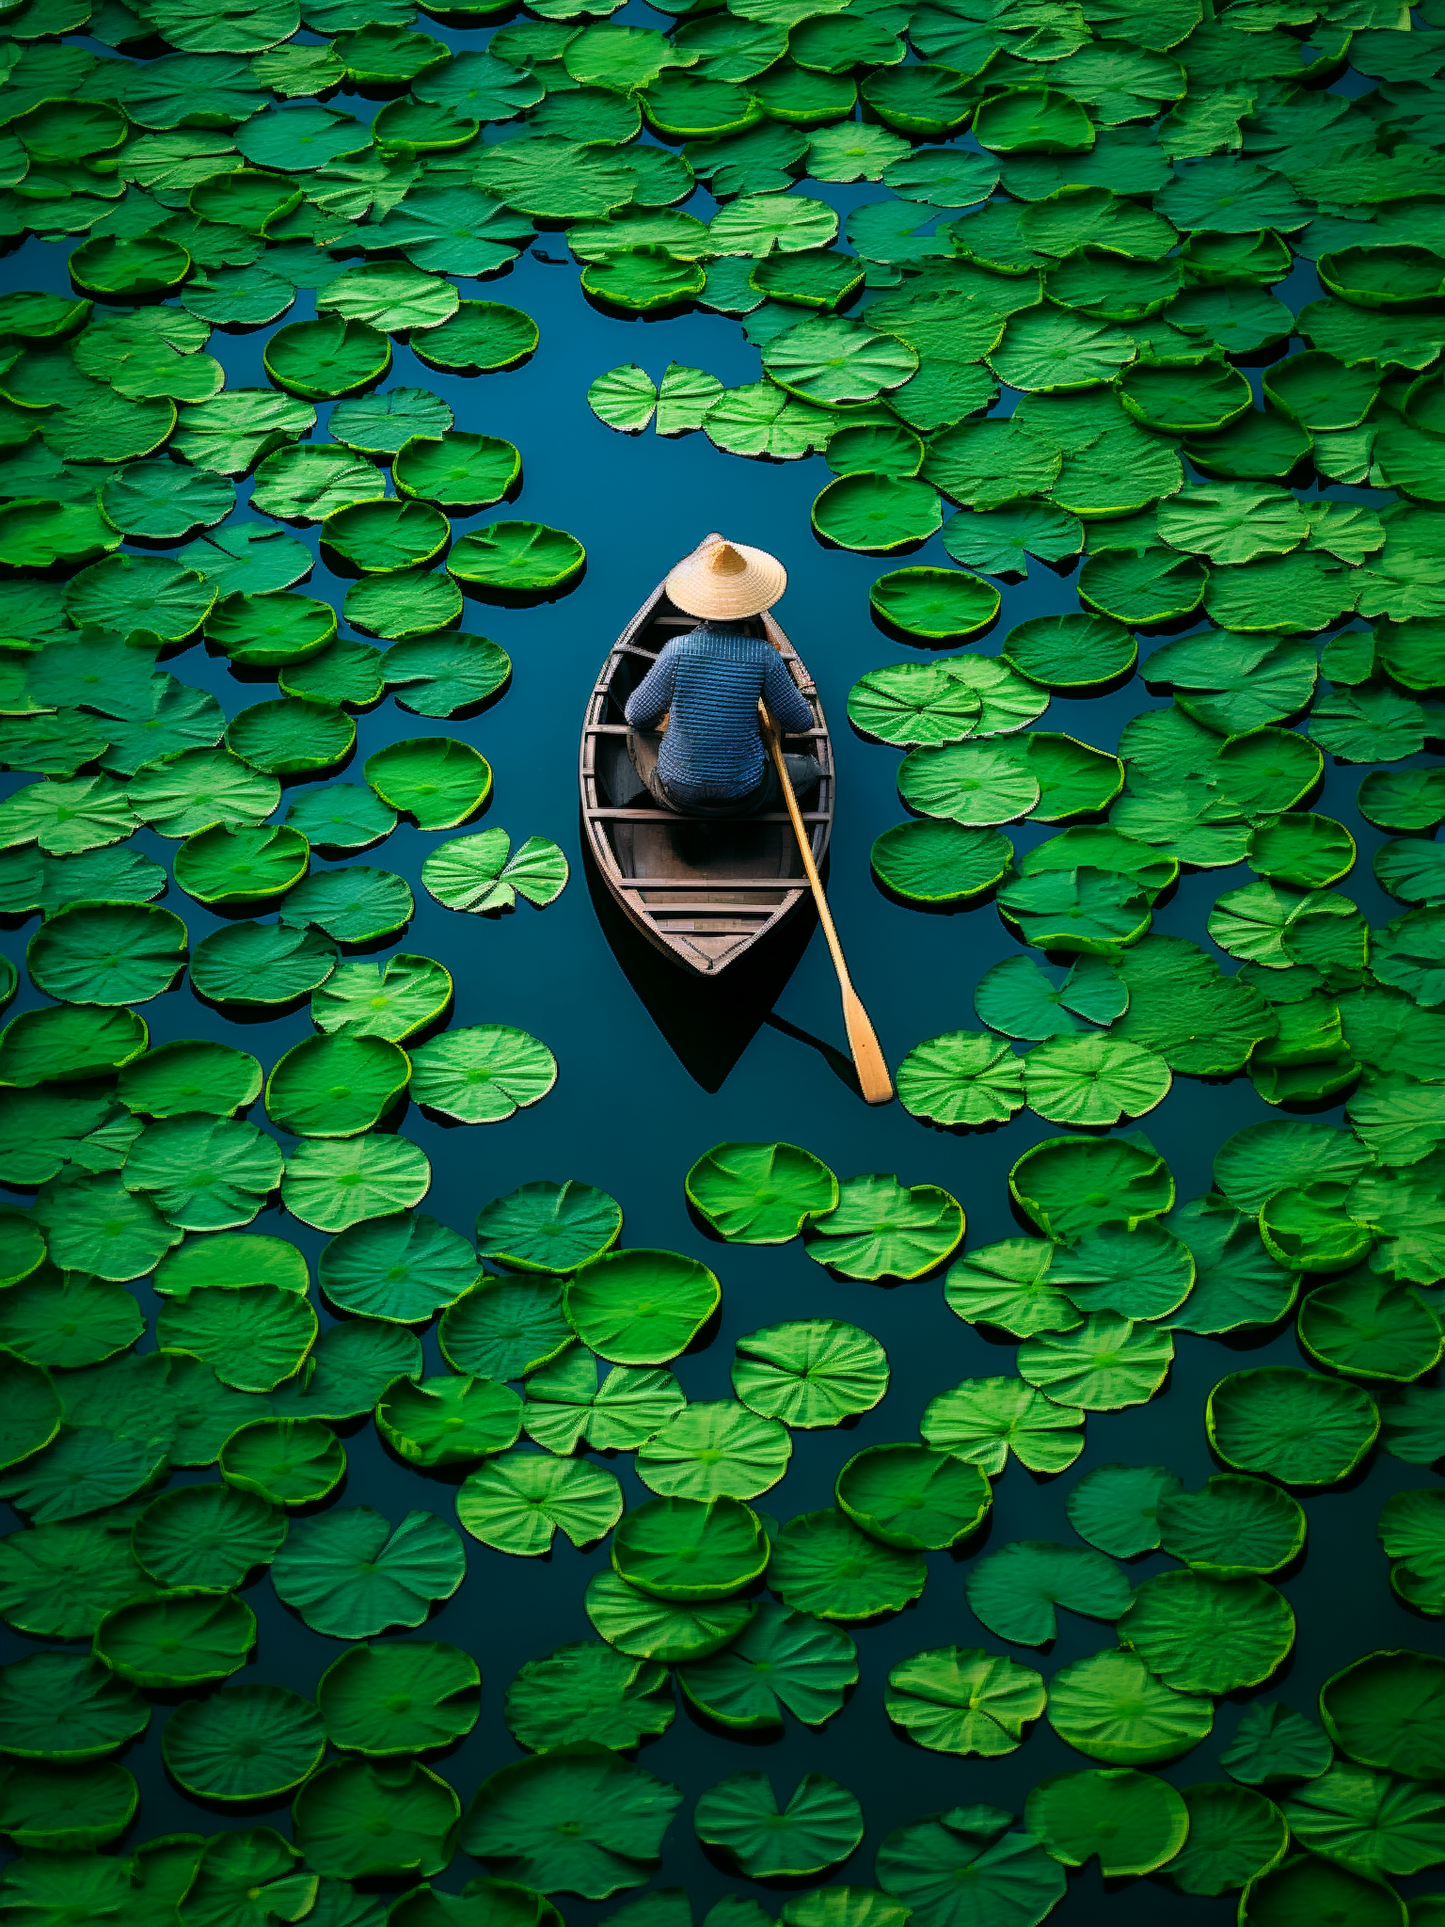 Photographie d'une vue plongeante sur un individu naviguant parmi les nénuphars verts, se détachant sur l'eau sombre pour un effet de sérénité et de solitude, parfait pour inspirer le calme.